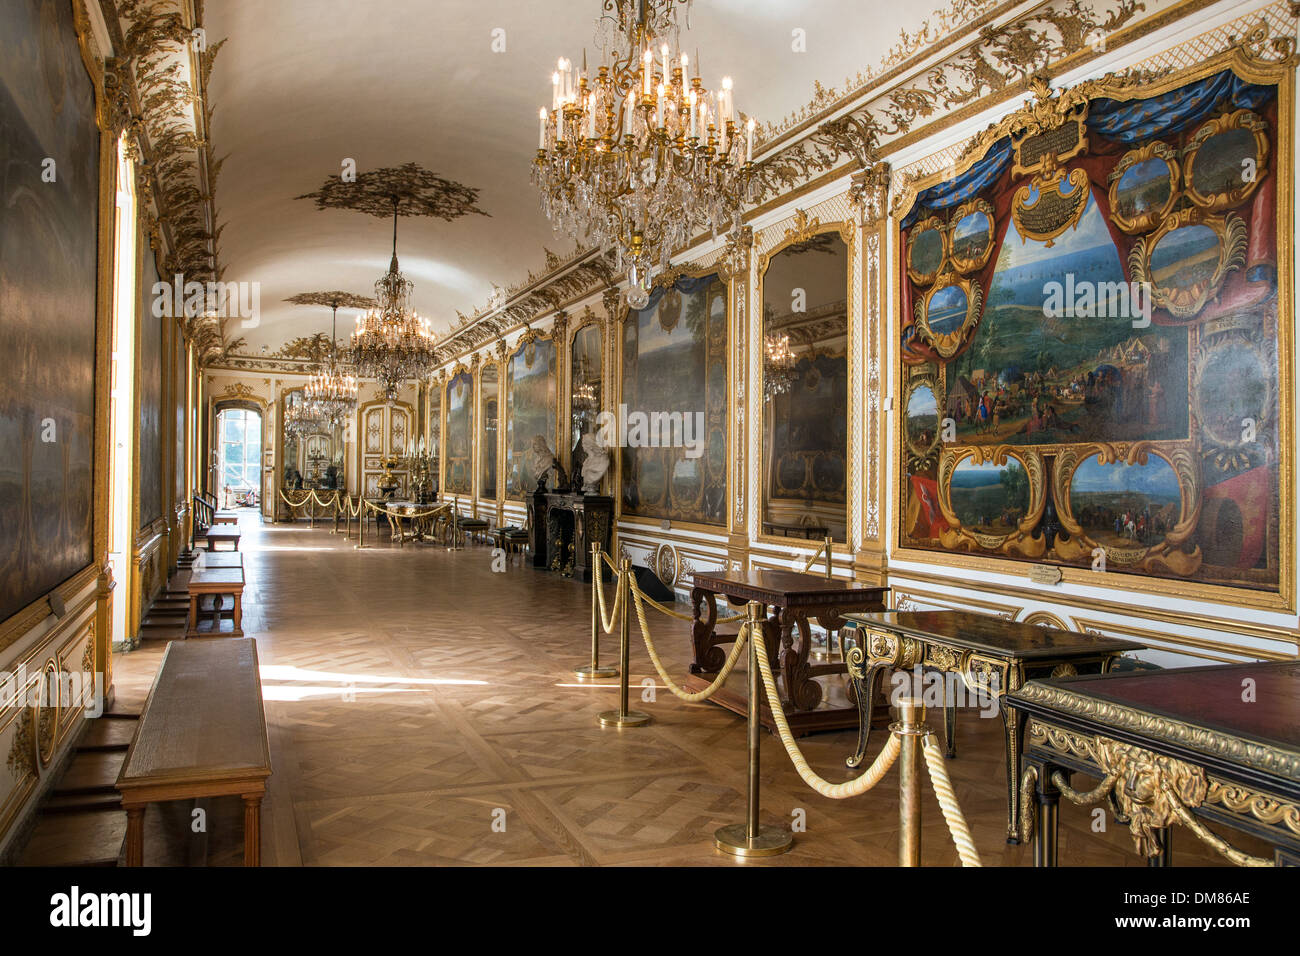 Galleria degli atti di Monsieur le Prince DU GRAND CONDE o la galleria delle battaglie dove 11 dipinti ripercorrendo il principe sono i contatti principali azioni militari sono esposti i grandi appartamenti nello Chateau de Chantilly, OISE (60), Francia Foto Stock